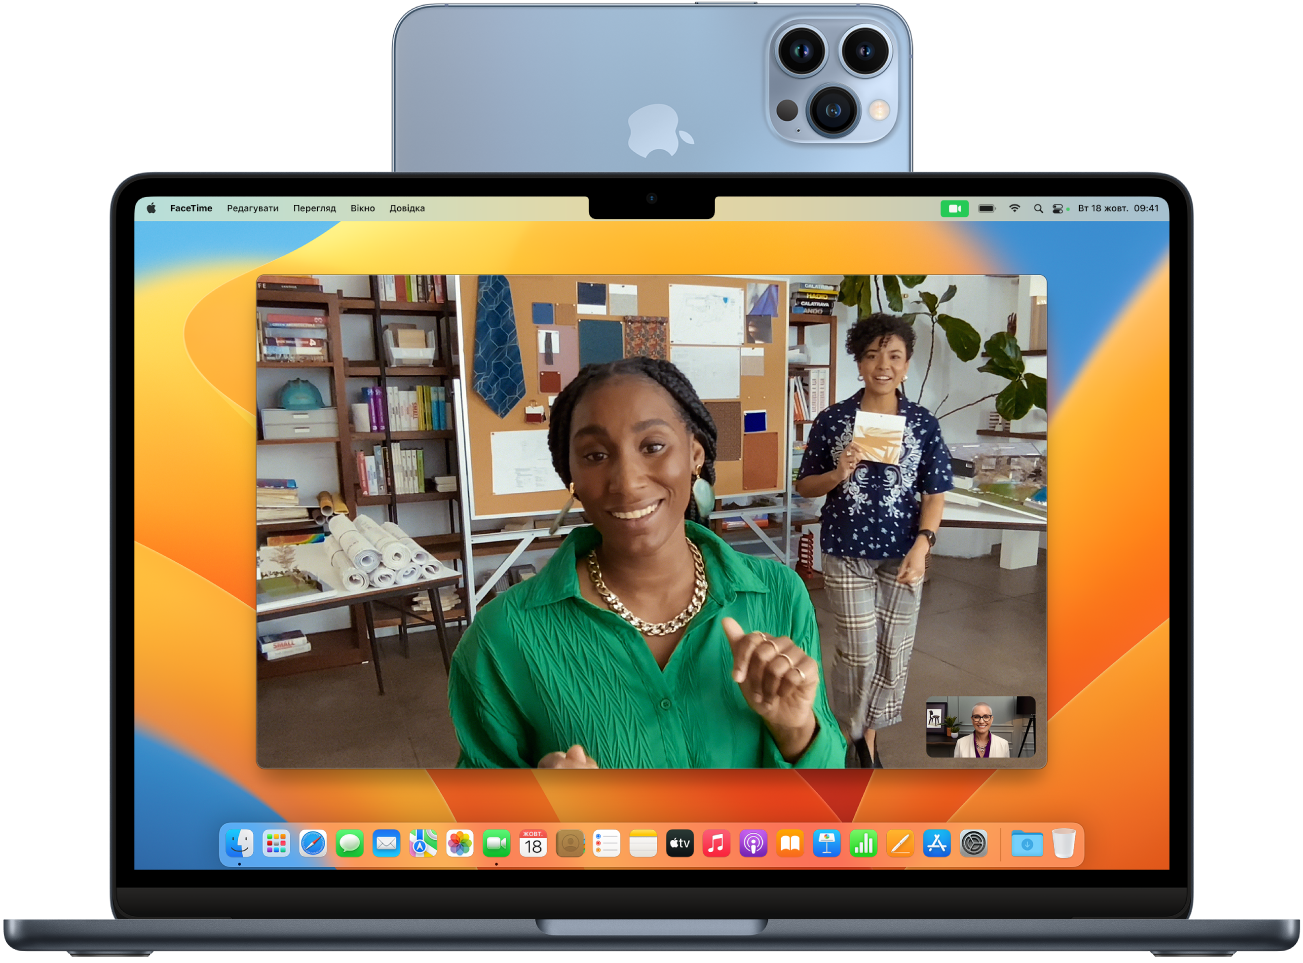 Mac з iPhone, що використовується як вебкамера, установлена на дисплей зверху. Зображення з камери iPhone відображається на дисплеї Mac.